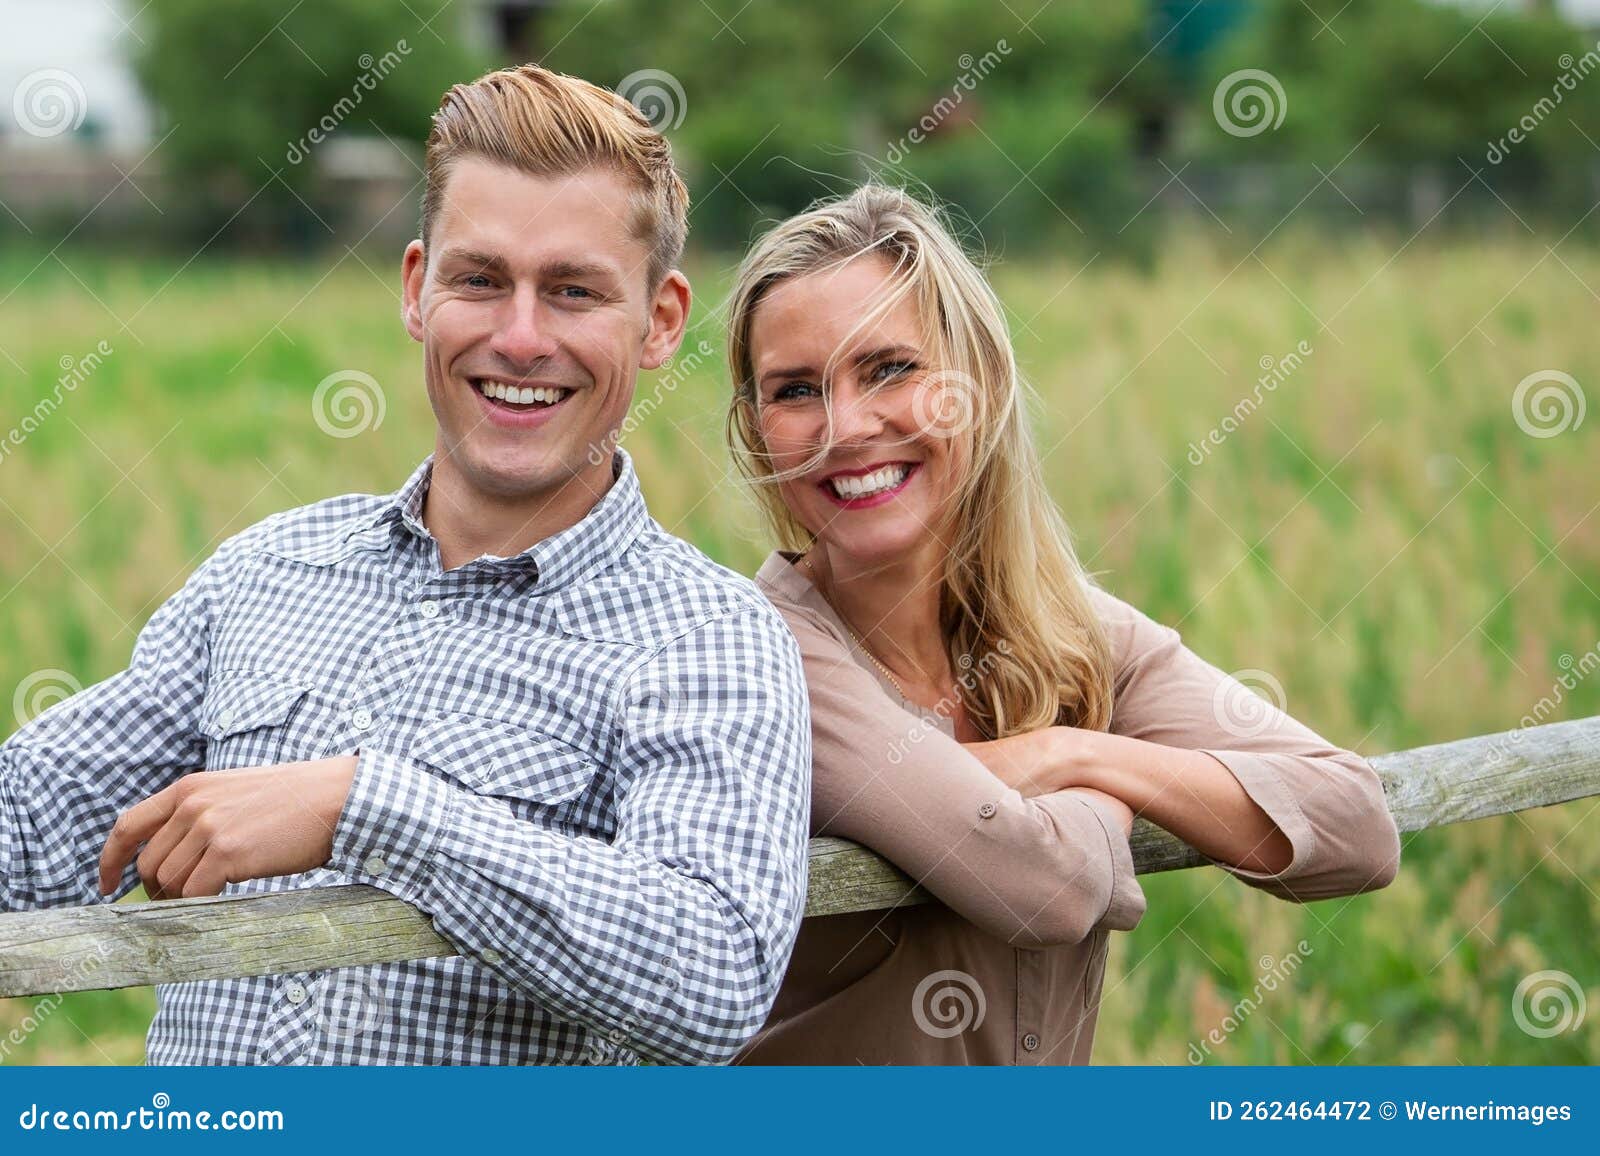 Darstellung eines jungen glücklichen lachenden Paares draußen in der Natur. Porträt eines jungen glücklichen lachenden Paares draußen in der Natur